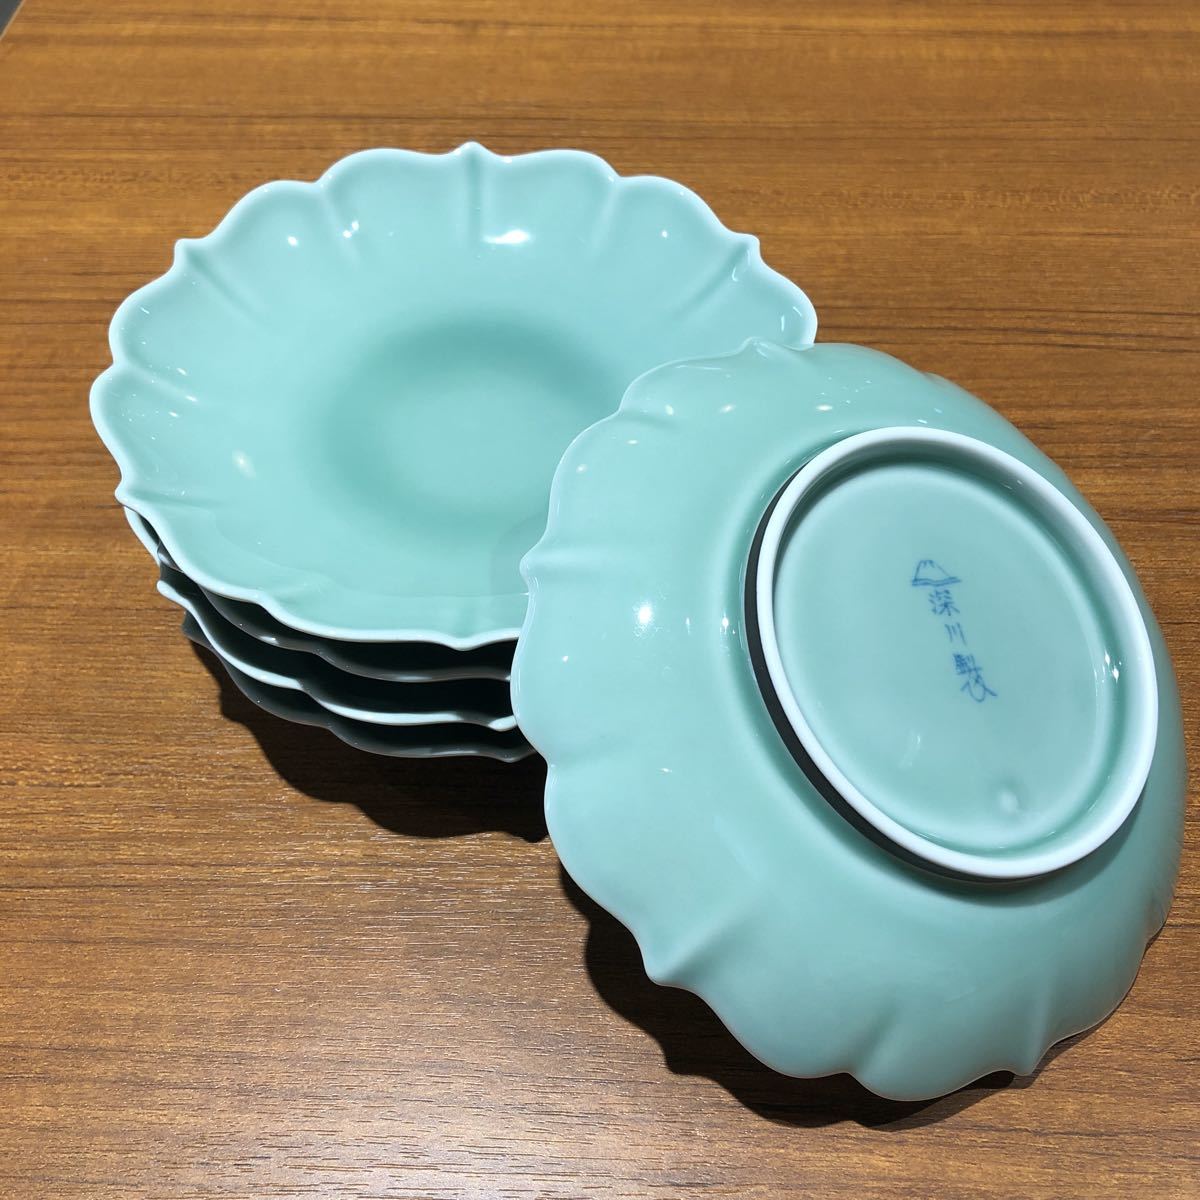 〈送料無料〉深川製磁 青磁 笹青磁 和皿 16cm 取皿 皿 銘々皿 盛り鉢 小皿 深川製 深川